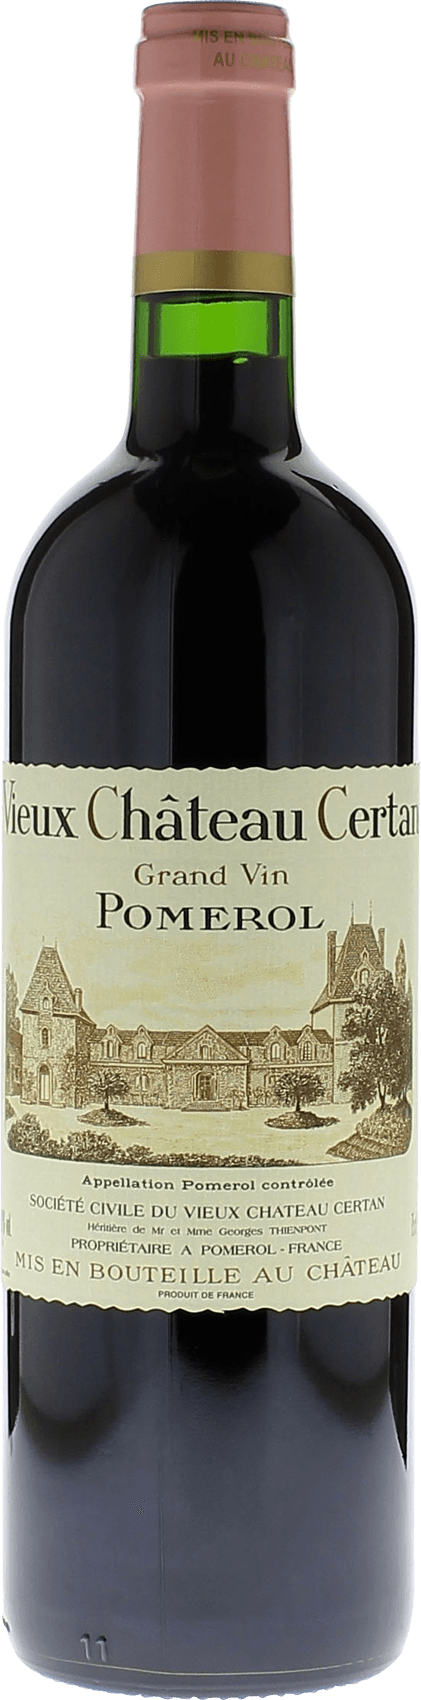 Vieux chteau  certan 2000  Pomerol, Bordeaux rouge